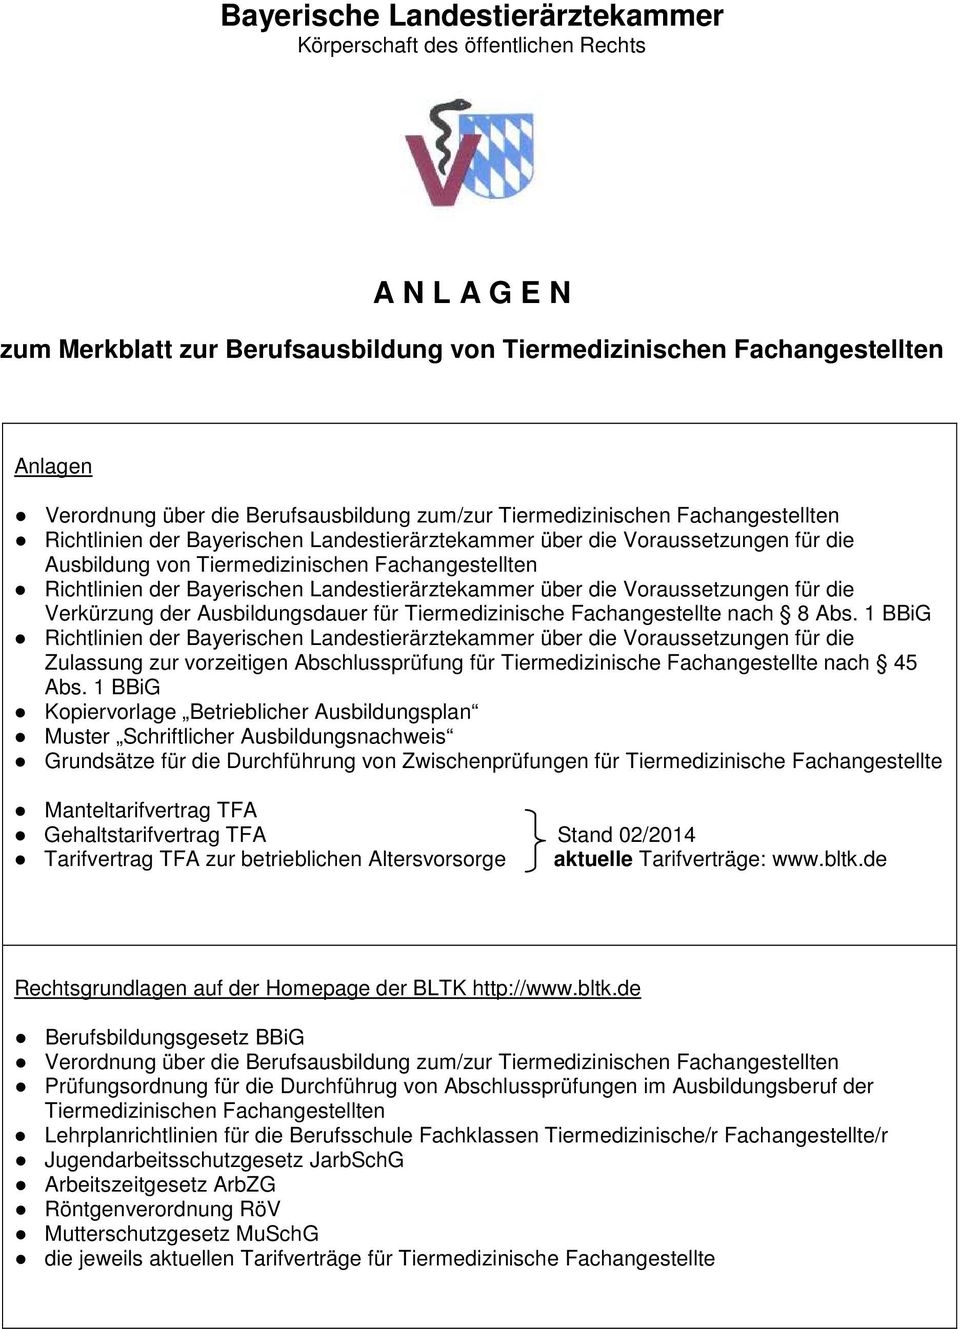 Richtlinien der Bayerischen Landestierärztekammer über die Voraussetzungen für die Verkürzung der Ausbildungsdauer für Tiermedizinische Fachangestellte nach 8 Abs.